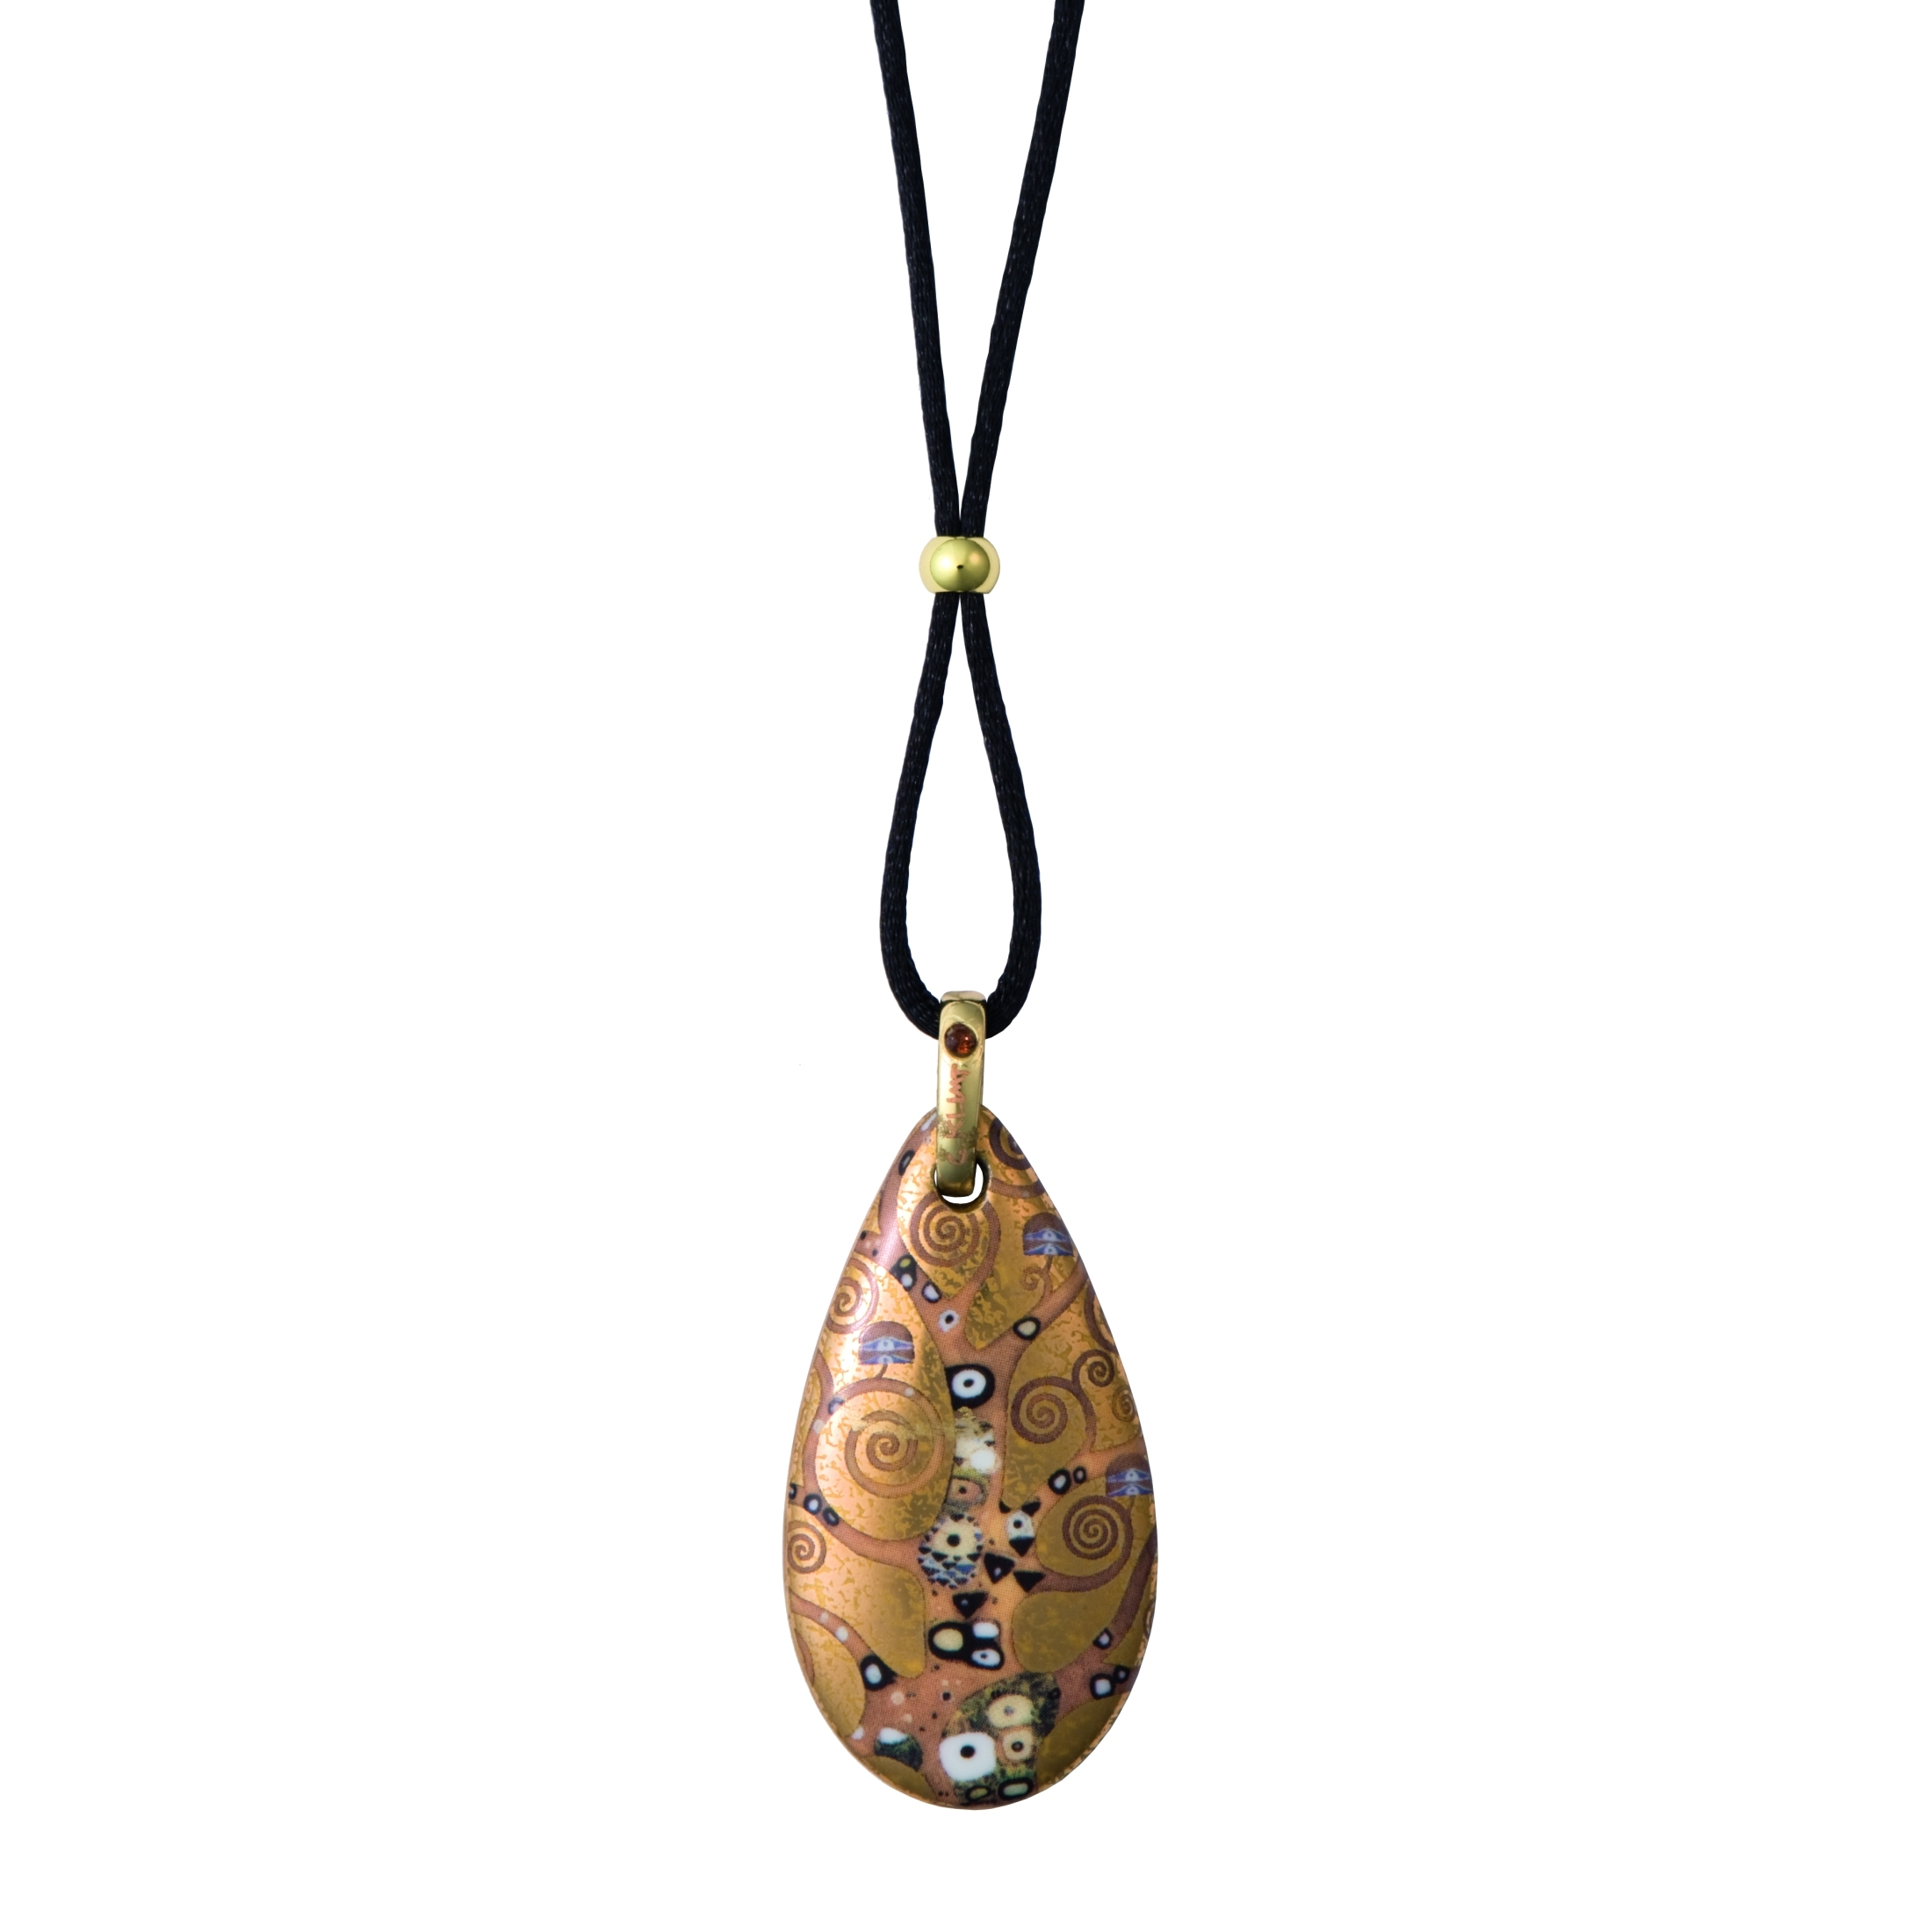 Goebel - Der Lebensbaum - Gustav Klimt - Kette mit Porzellan Tropfen Amulett